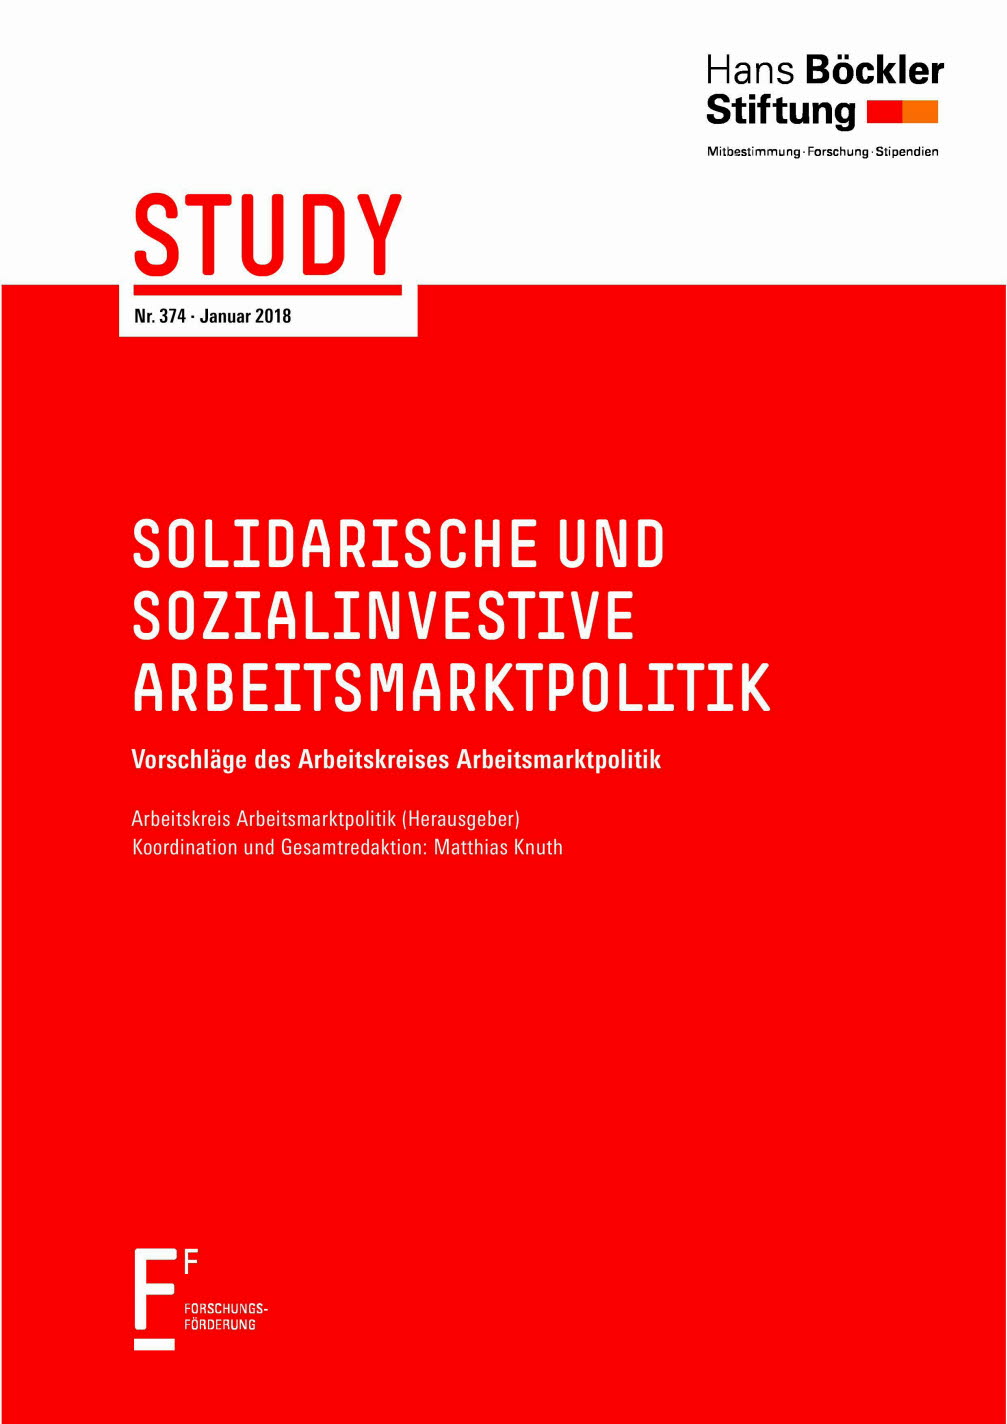 Solidarische und sozialinvestive Arbeitsmarktpolitik